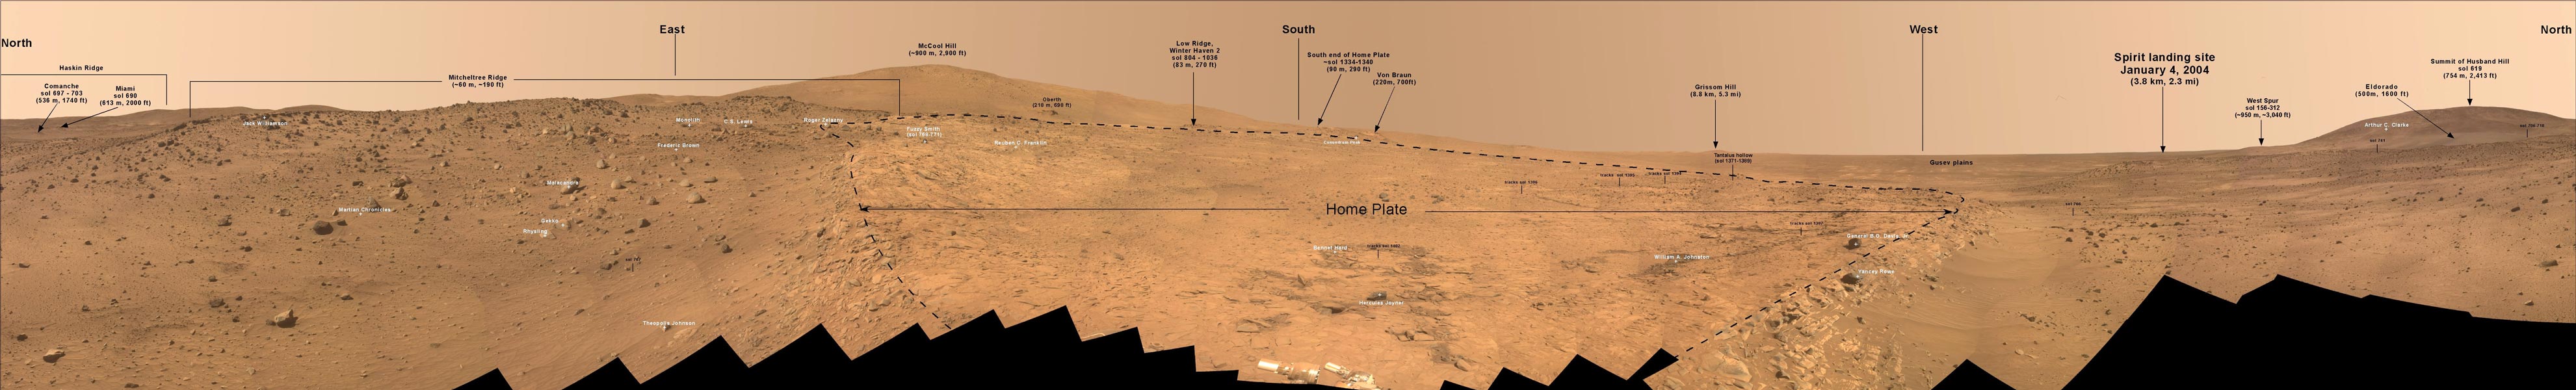 Das breite, niedrige Bild zeigt ein Panorama des Home Plates auf dem Mars. Beschreibung im Text.